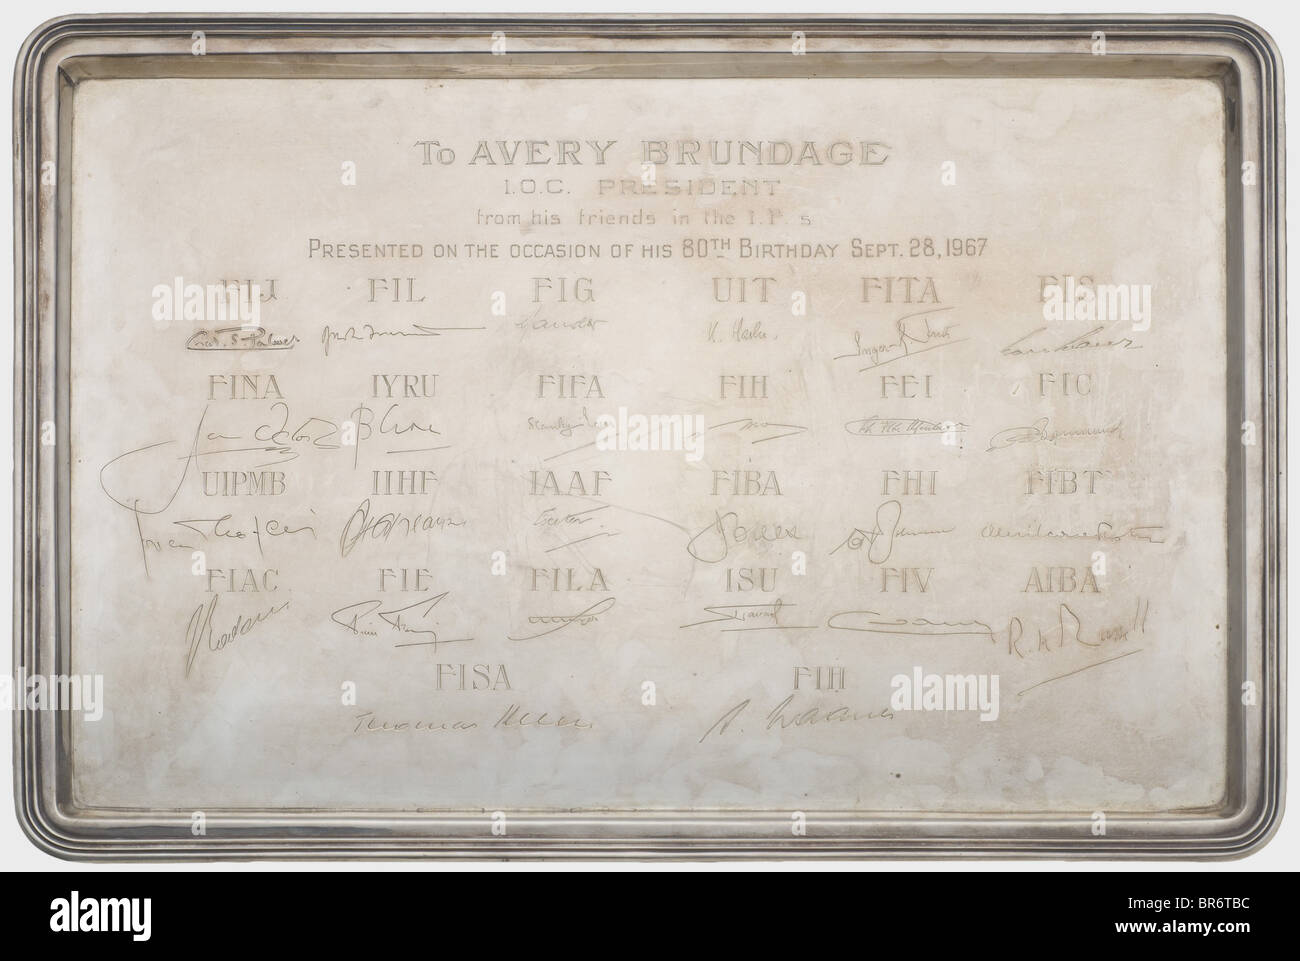 Avery Brundage (1887-1975) - eine silberne Geschenkplatte, die von den Präsidenten der verschiedenen internationalen Sportverbände anlässlich seines 80. Geburtstags im Jahr 1967 verliehen wurde. Silber, Rechteckform, Markenzeichen und Schmuckstücke der Marken '800' und 'Beard Montreux'. Im Zentrum die Widmungsgravur "An Avery Brundage I.O.C. Präsident seiner Freunde in den I.F.s, der anlässlich seines 80. Geburtstags vom 28. September 1967 vorgestellt wurde, und die 26 Unterschriften der Präsidenten, darunter Stanley Rous (FIFA), Antonio dos Reis Carnero (FIBA), Frau Inger Frith (FITA/Bogenschießen), Rudy, Stockfoto